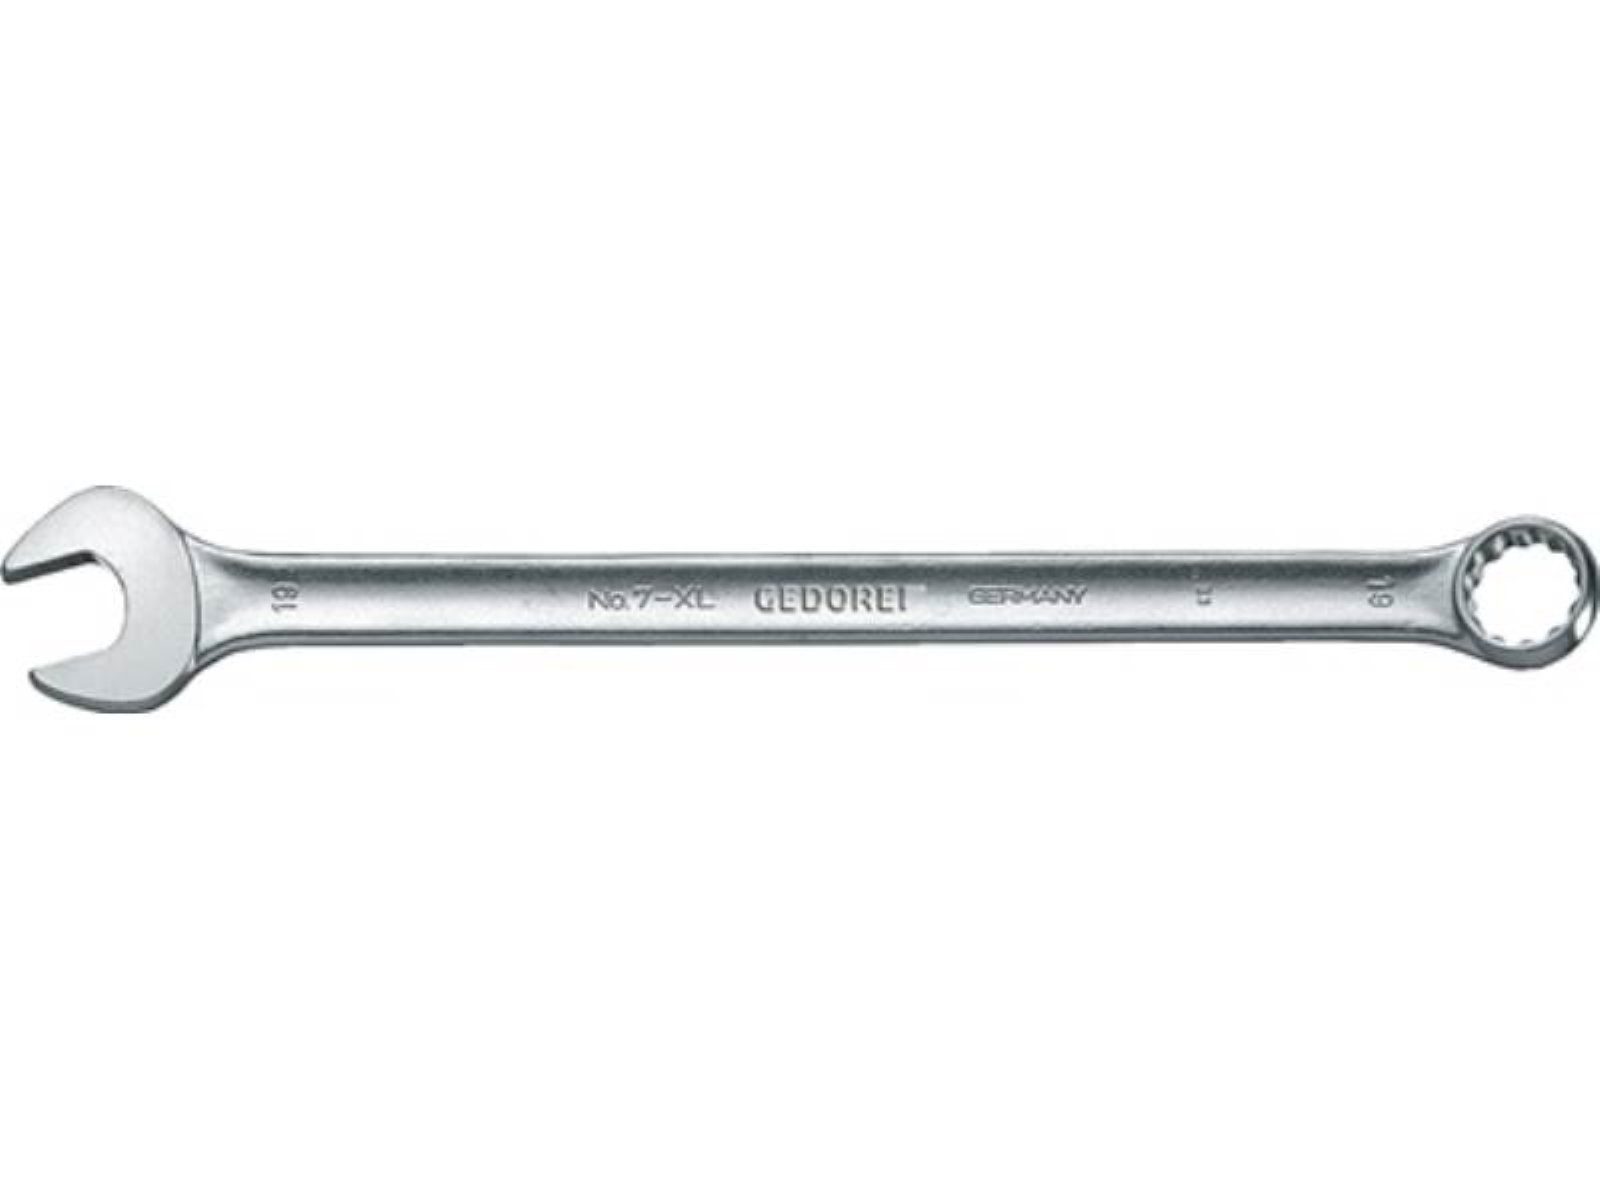 Gedore Maulschlüssel Ringmaulschlüssel 7 XL SW 9mm L.180mm Form A ext.lang CV-Stahl GEDORE